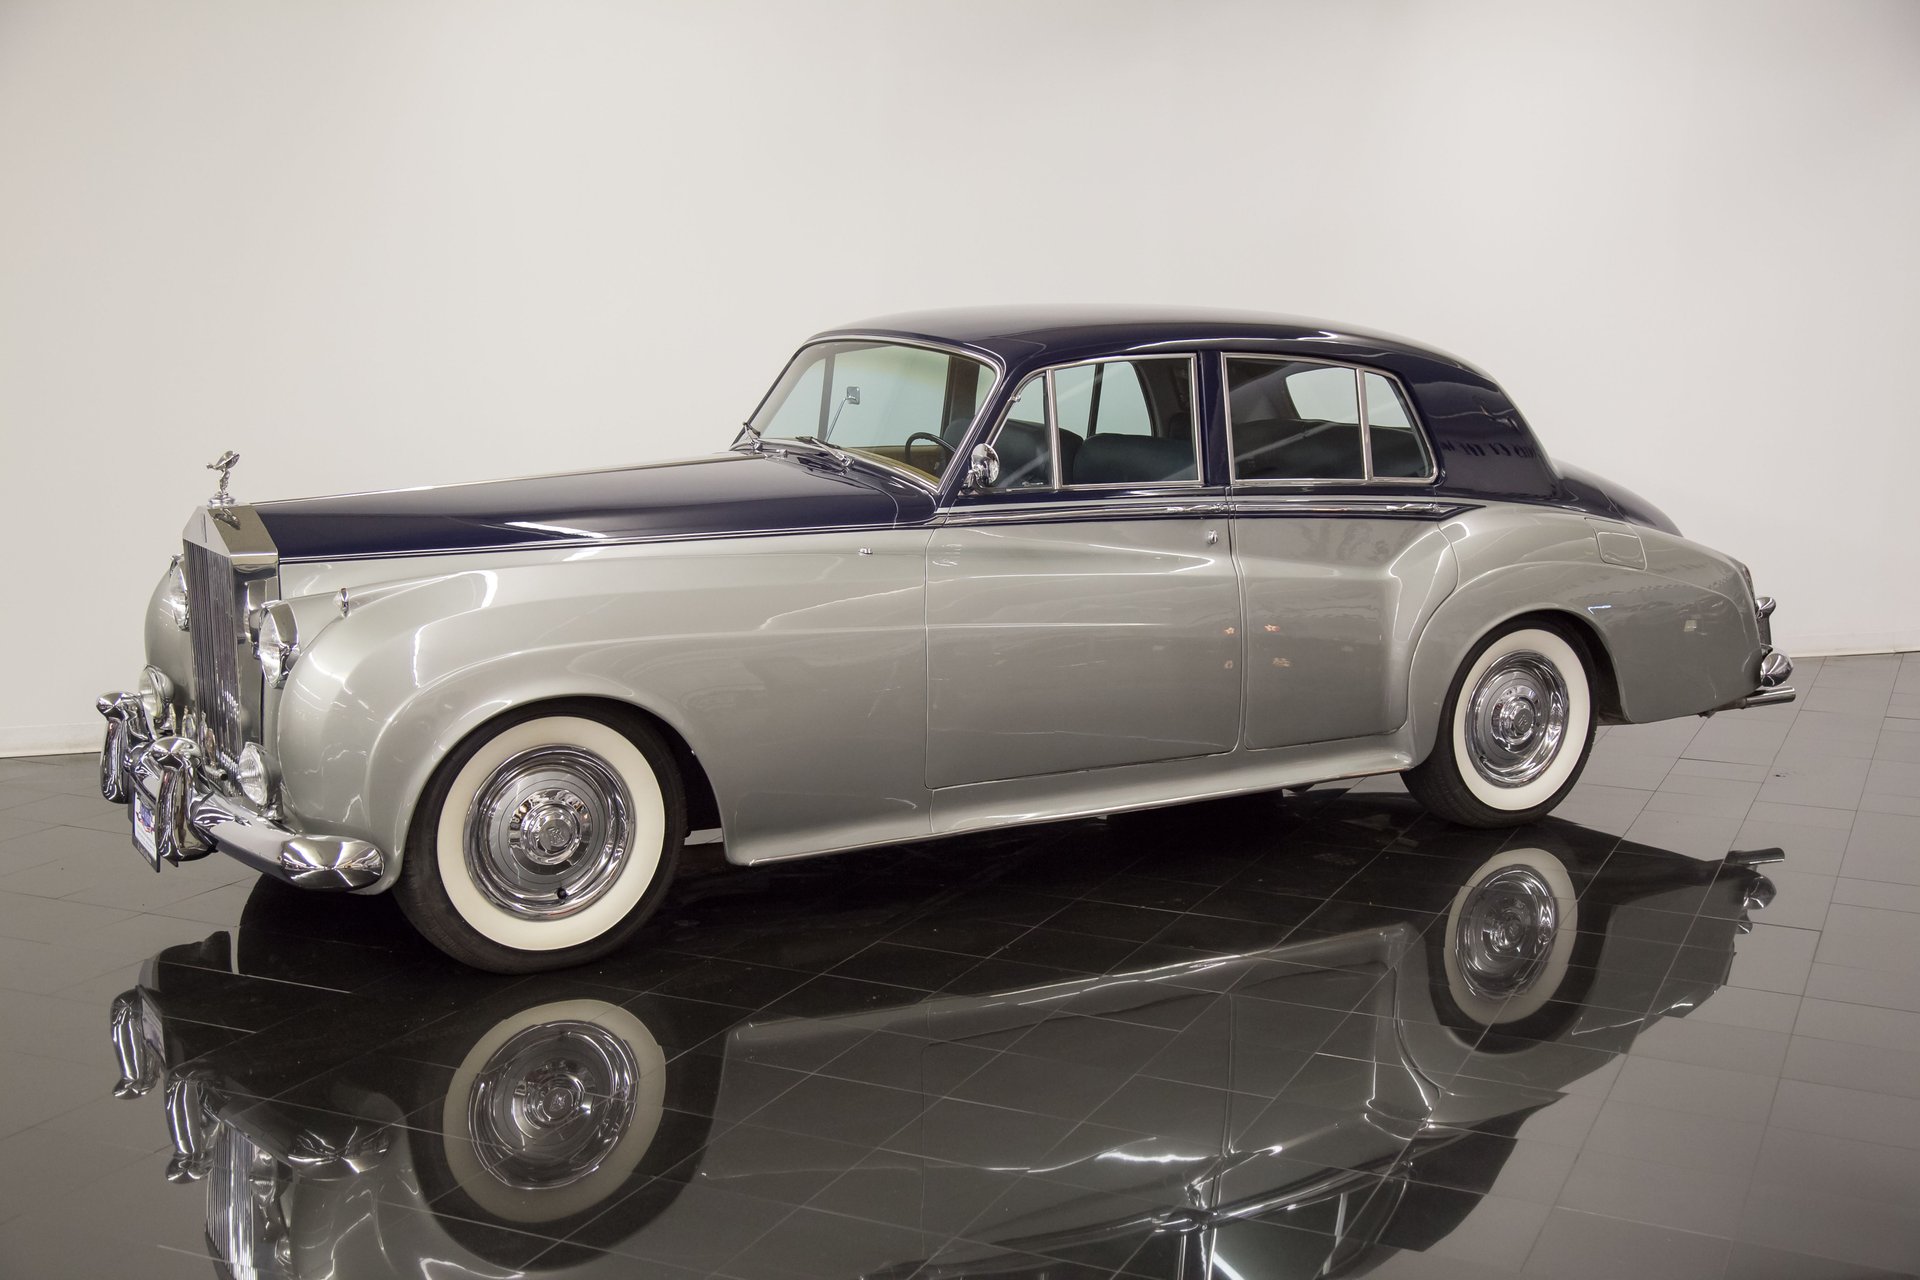 1961 Rolls Royce Silver Cloud II For Sale | St. Louis Car Museum